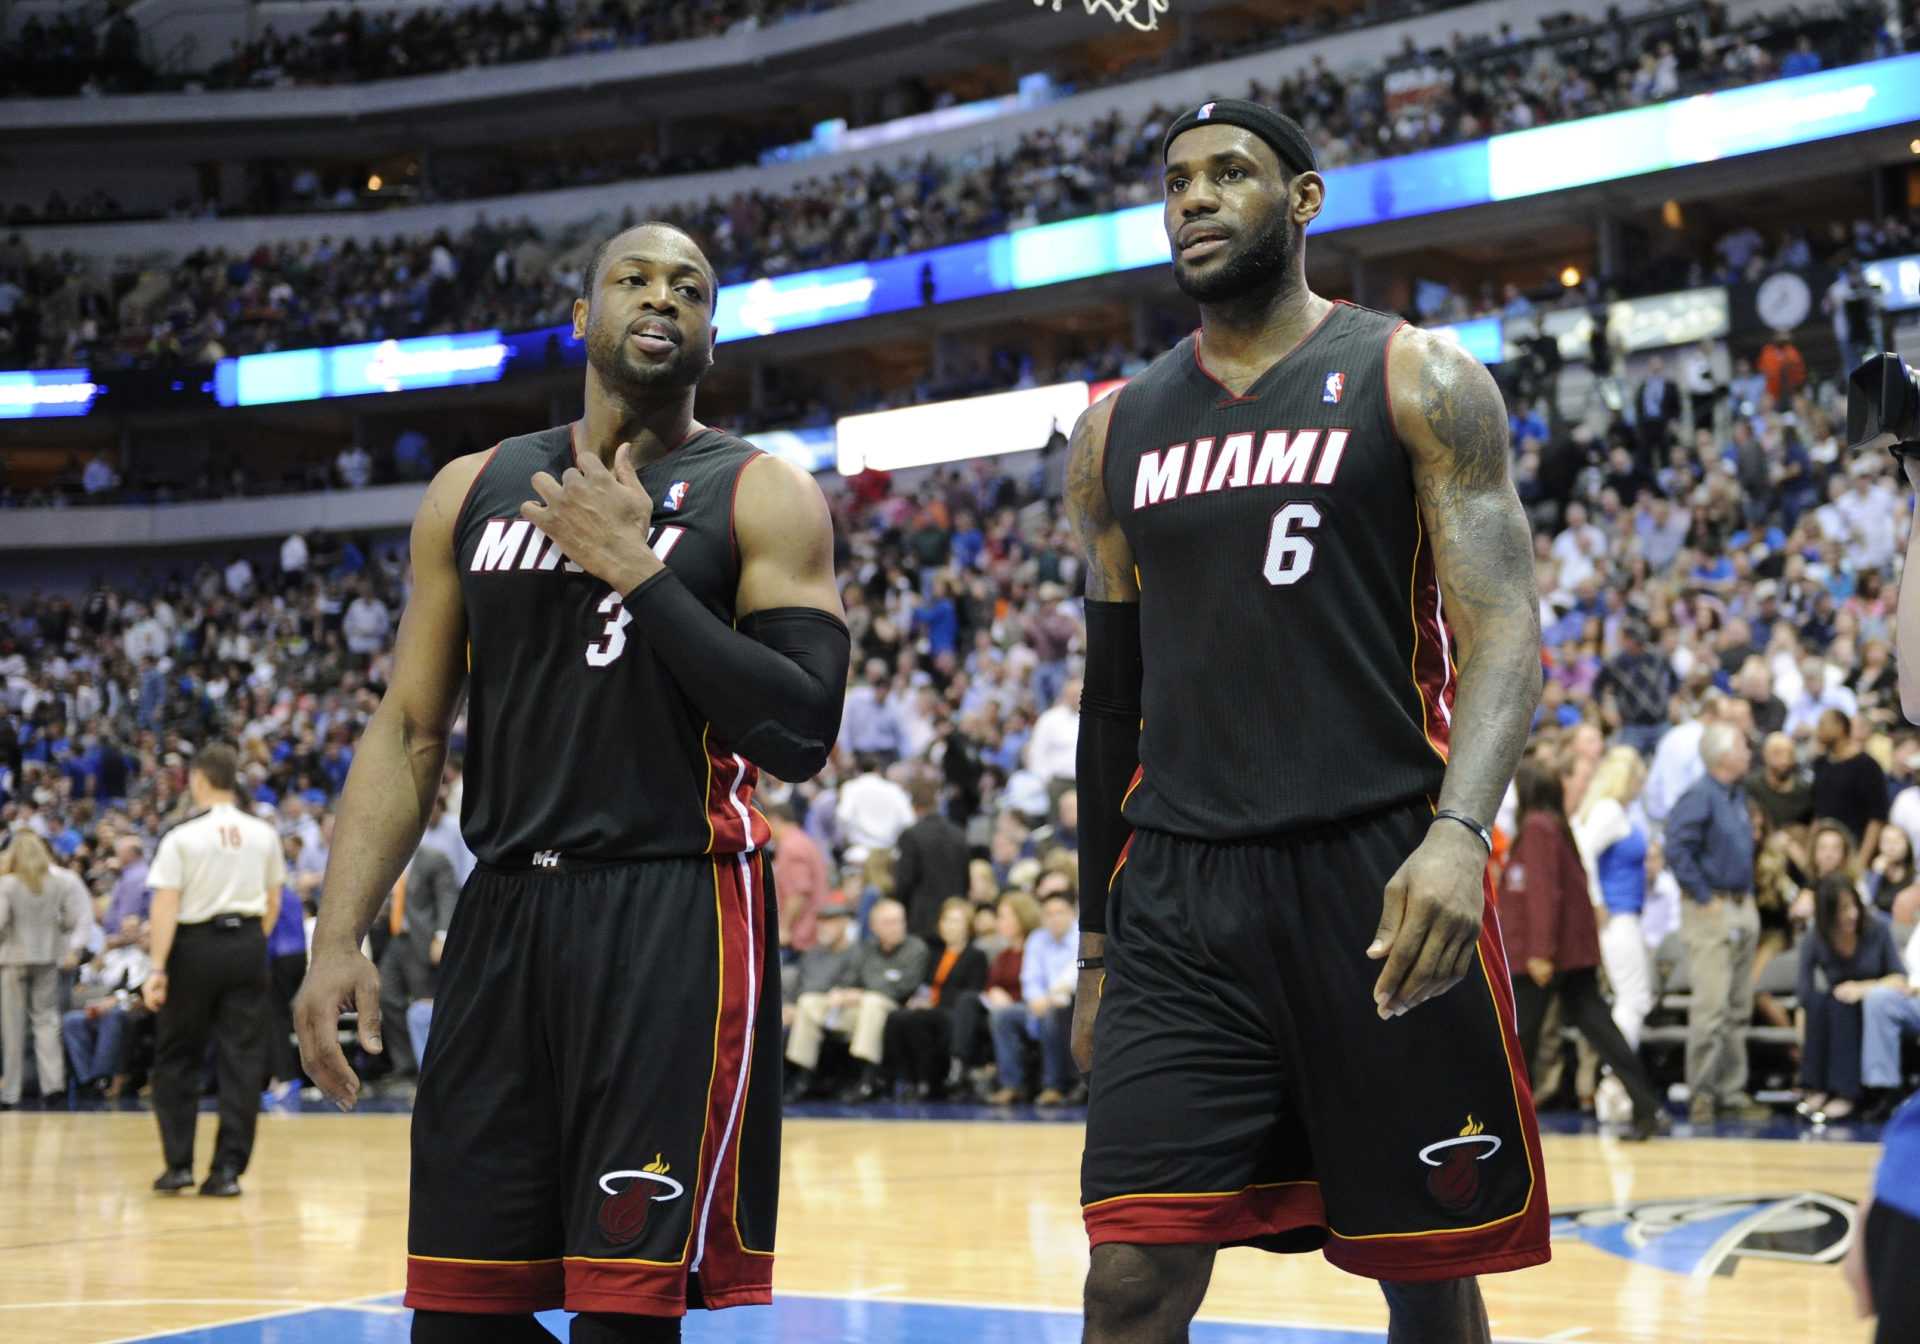 La légende de Miami Heat Dwyane Wade révèle son coéquipier préféré et ce n'est pas LeBron James